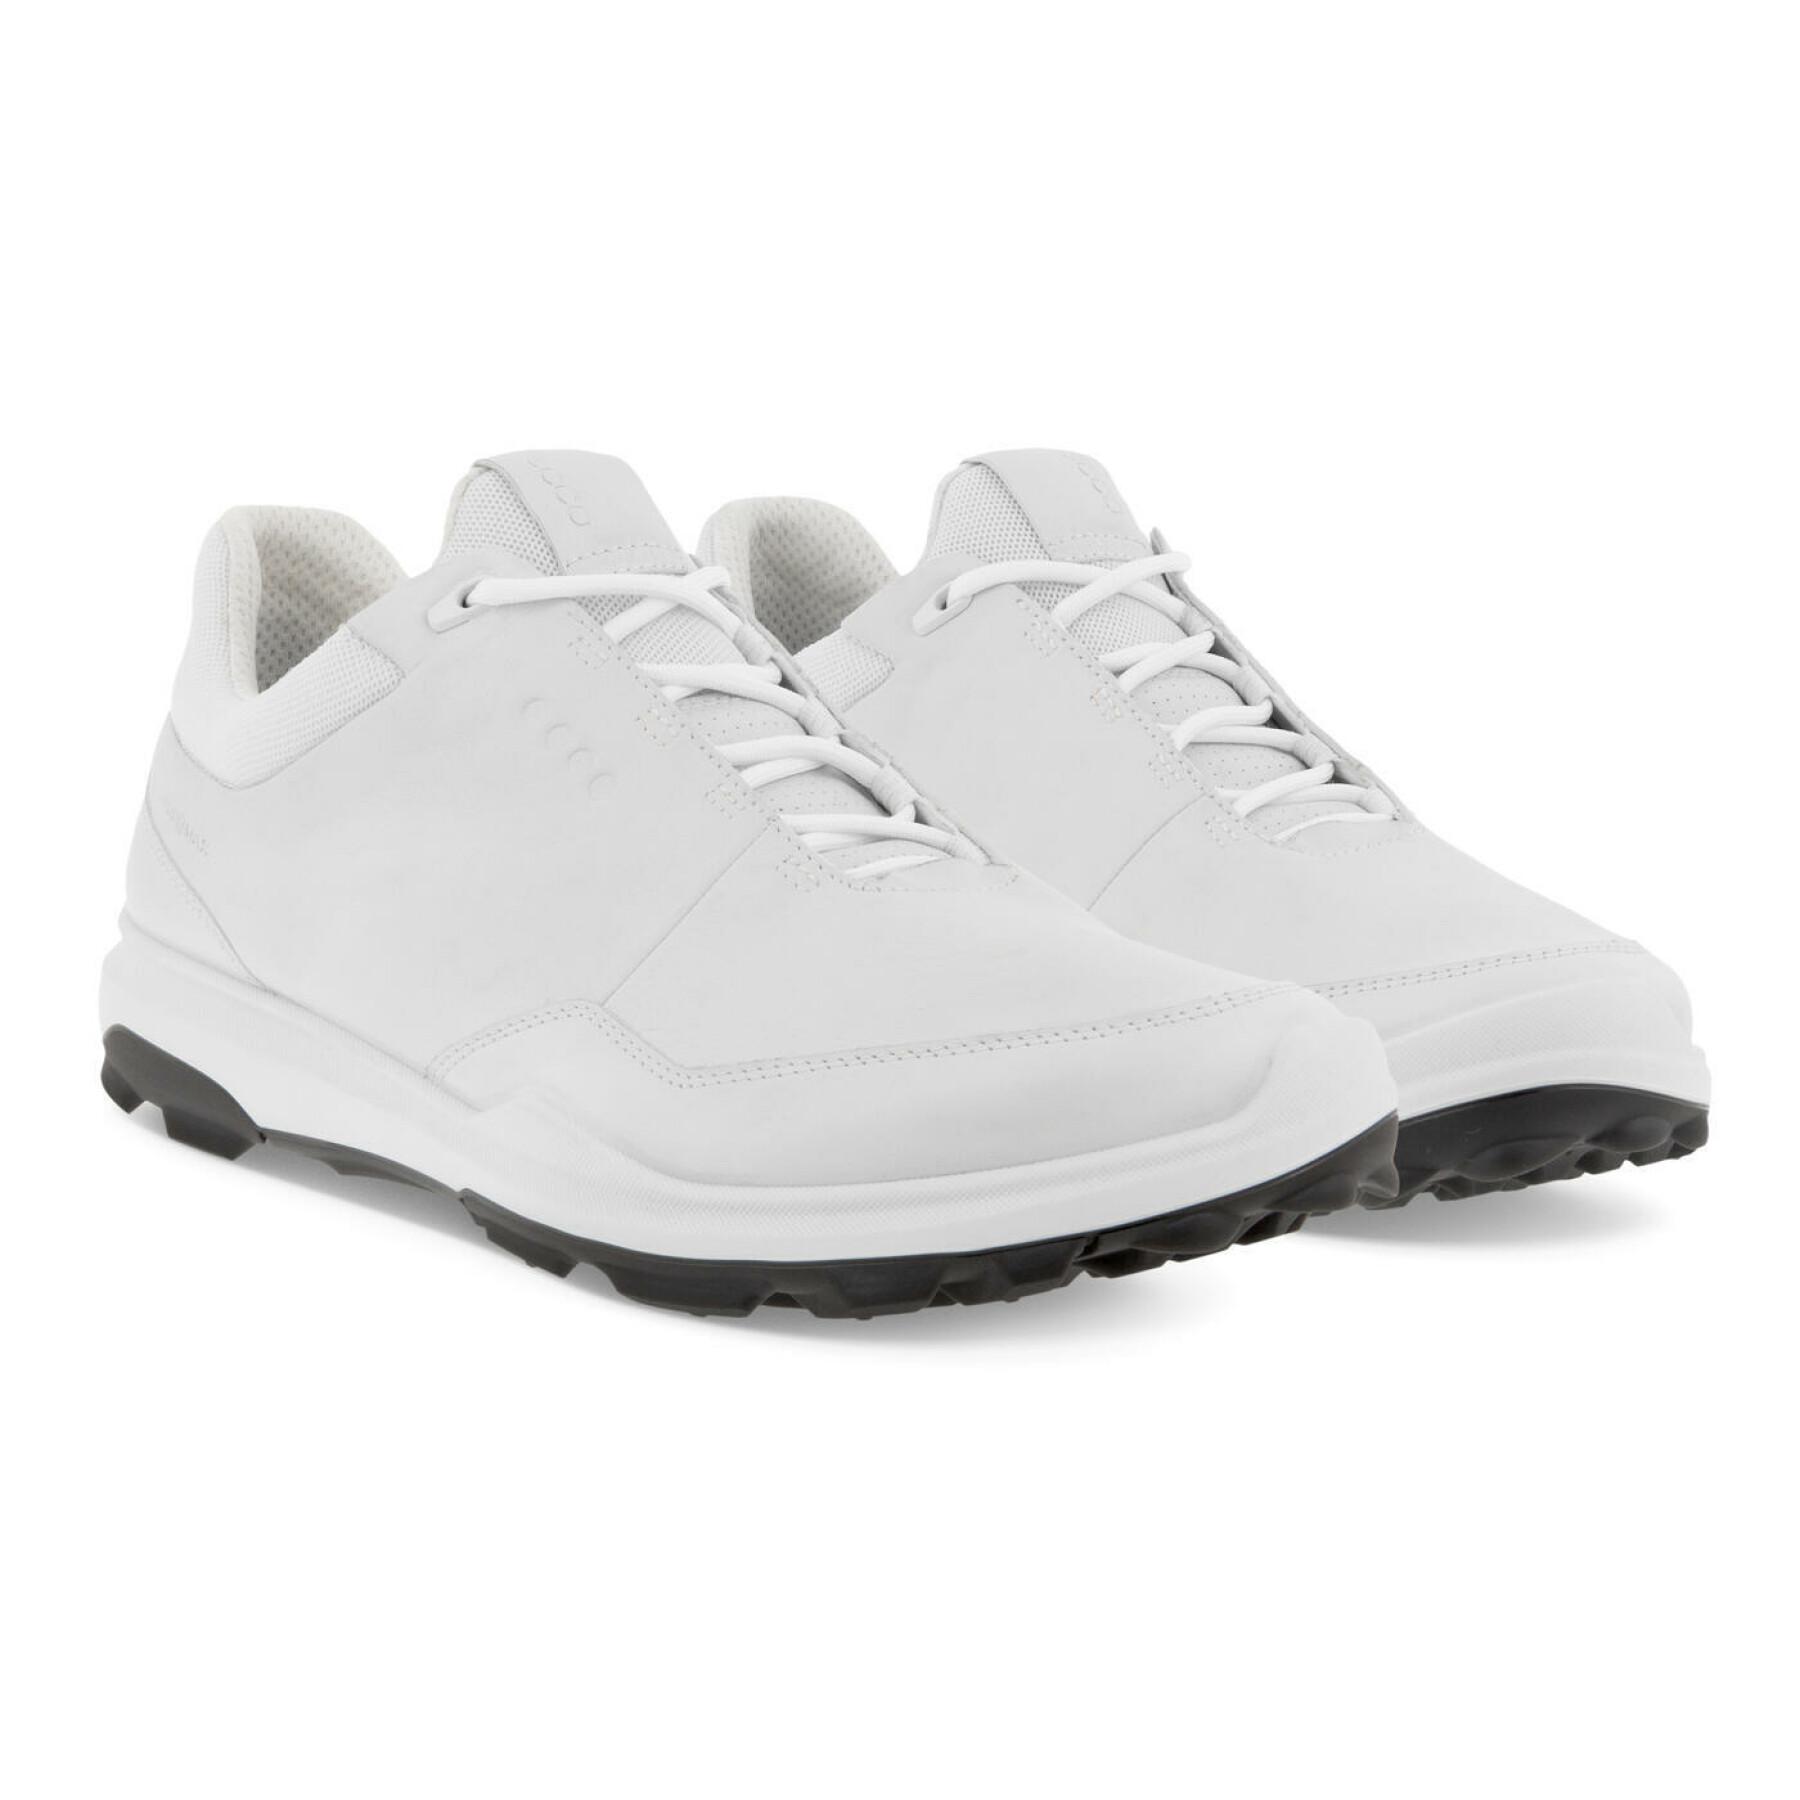 Chaussures de golf Ecco Biom Hybrid 3 Smu